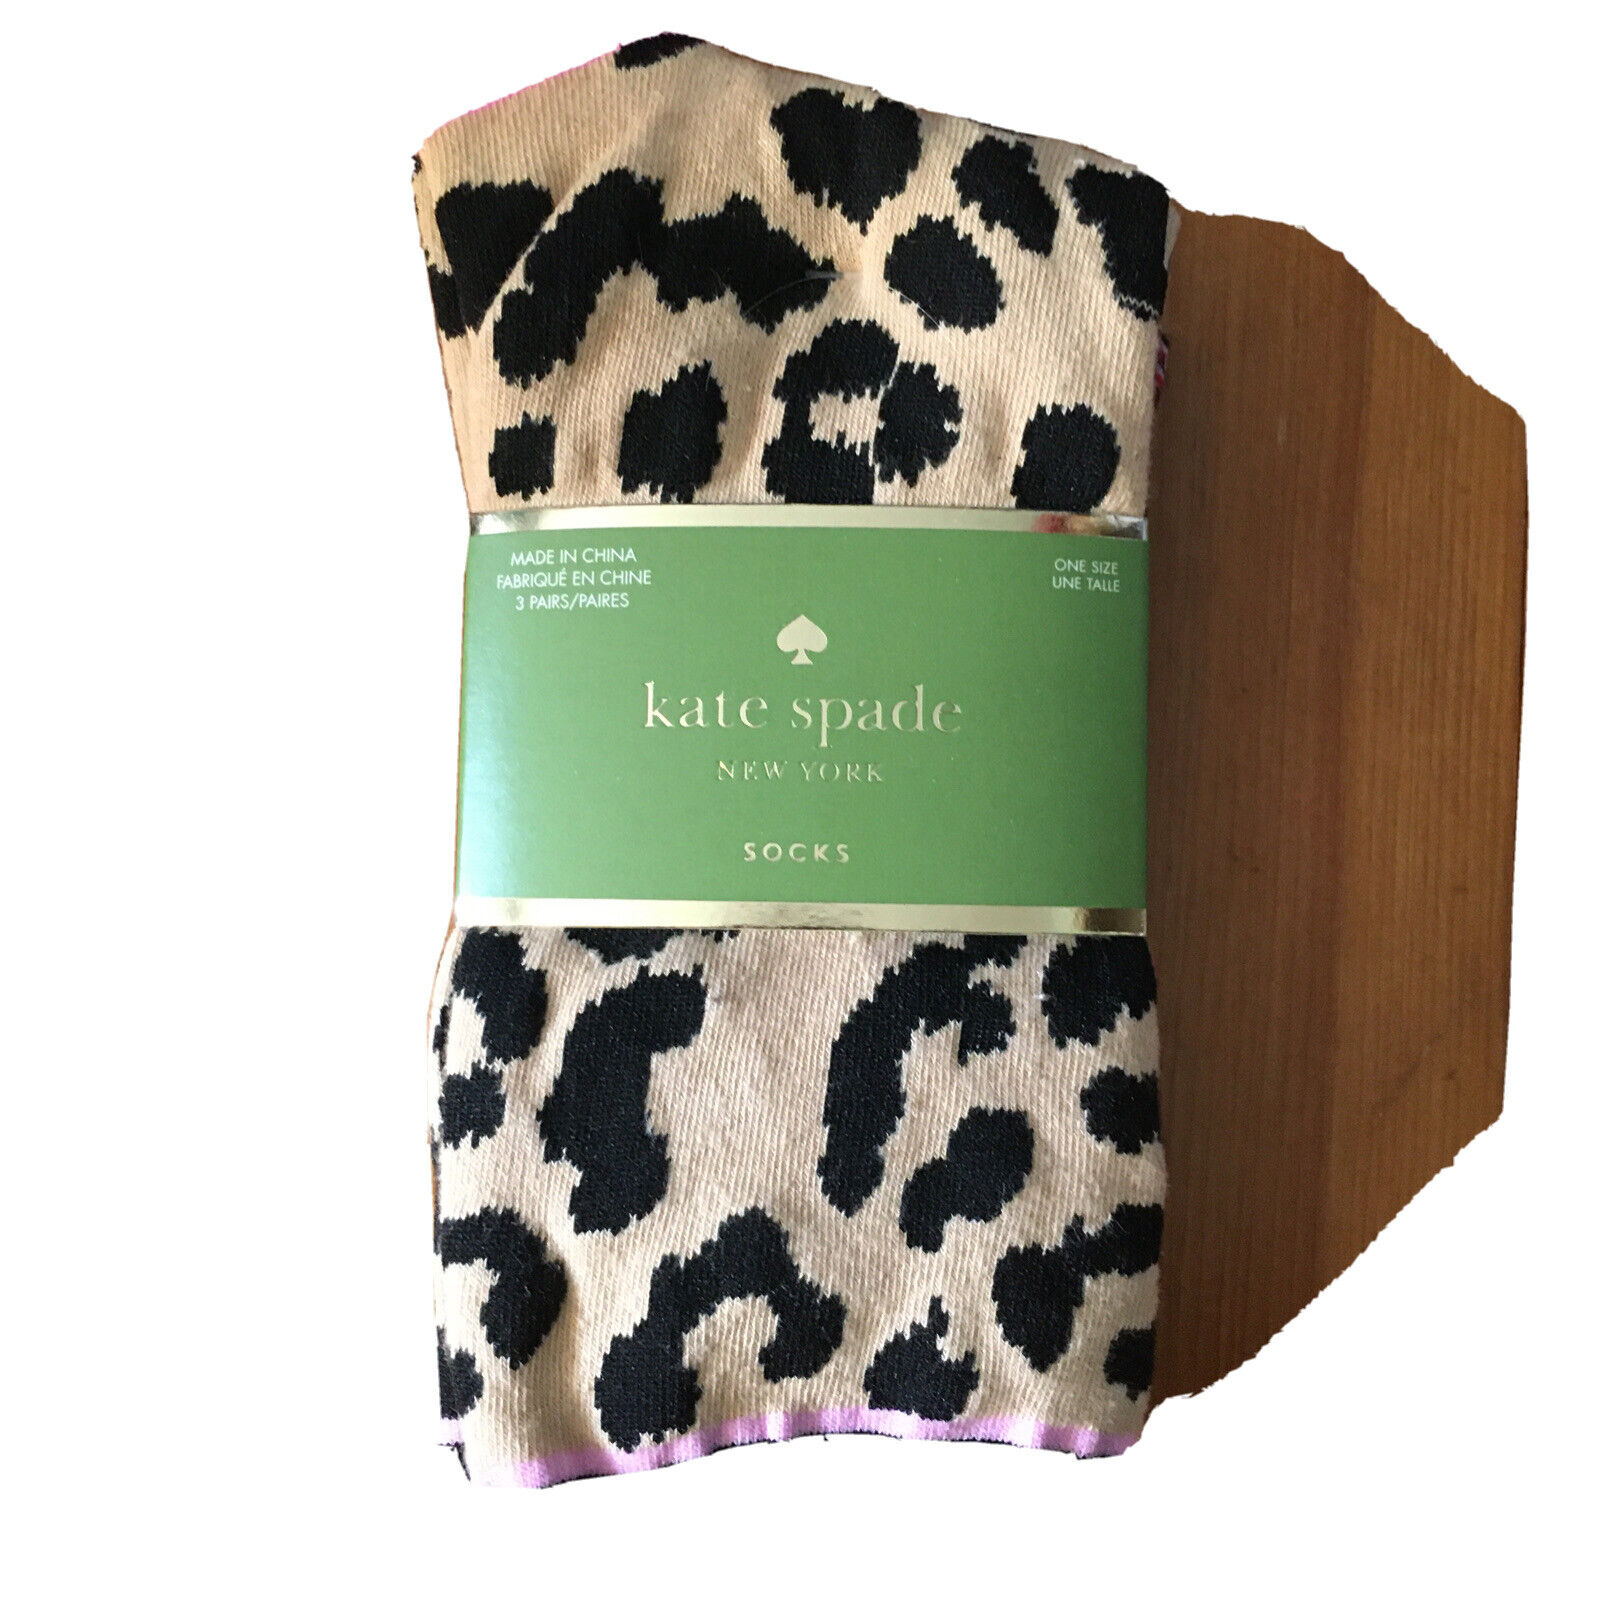 KATE SPADE New York 3 pair socks BLACK,ROSE,TAN,CHEETAH & SPARKLES size  9-11 | eBay